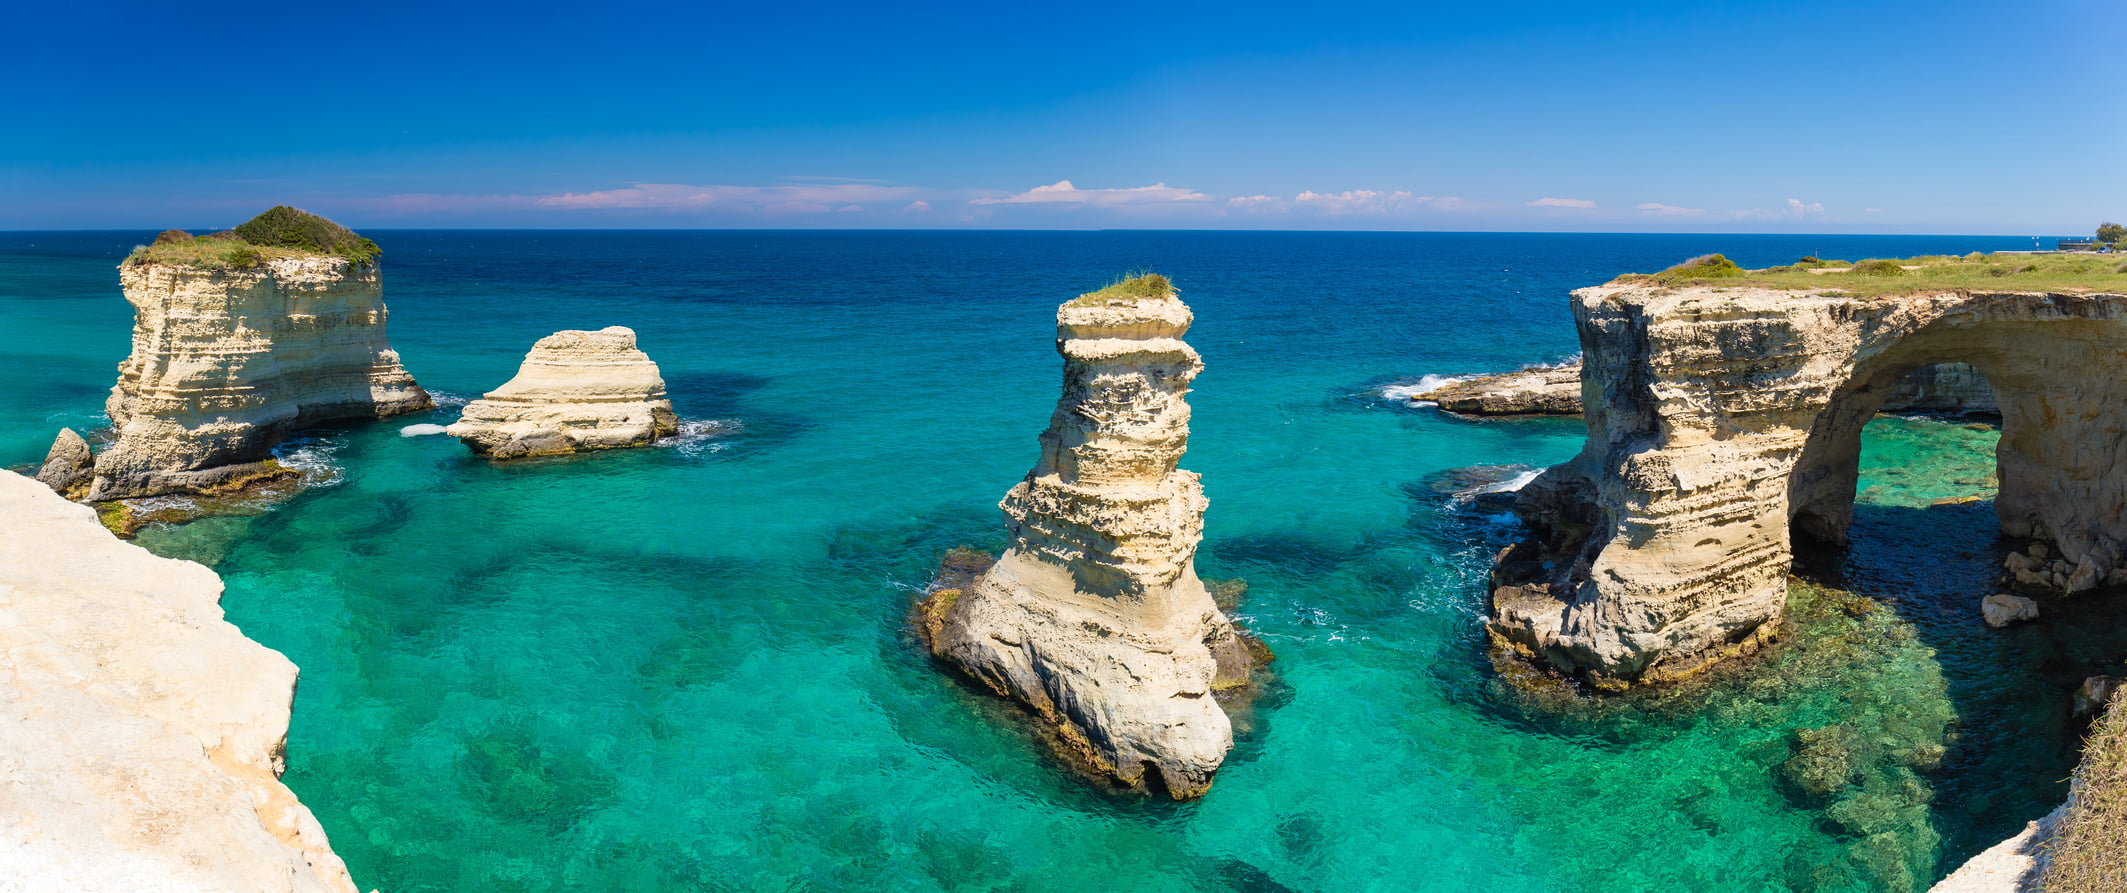 Puglia in pictures: best photos of Puglia